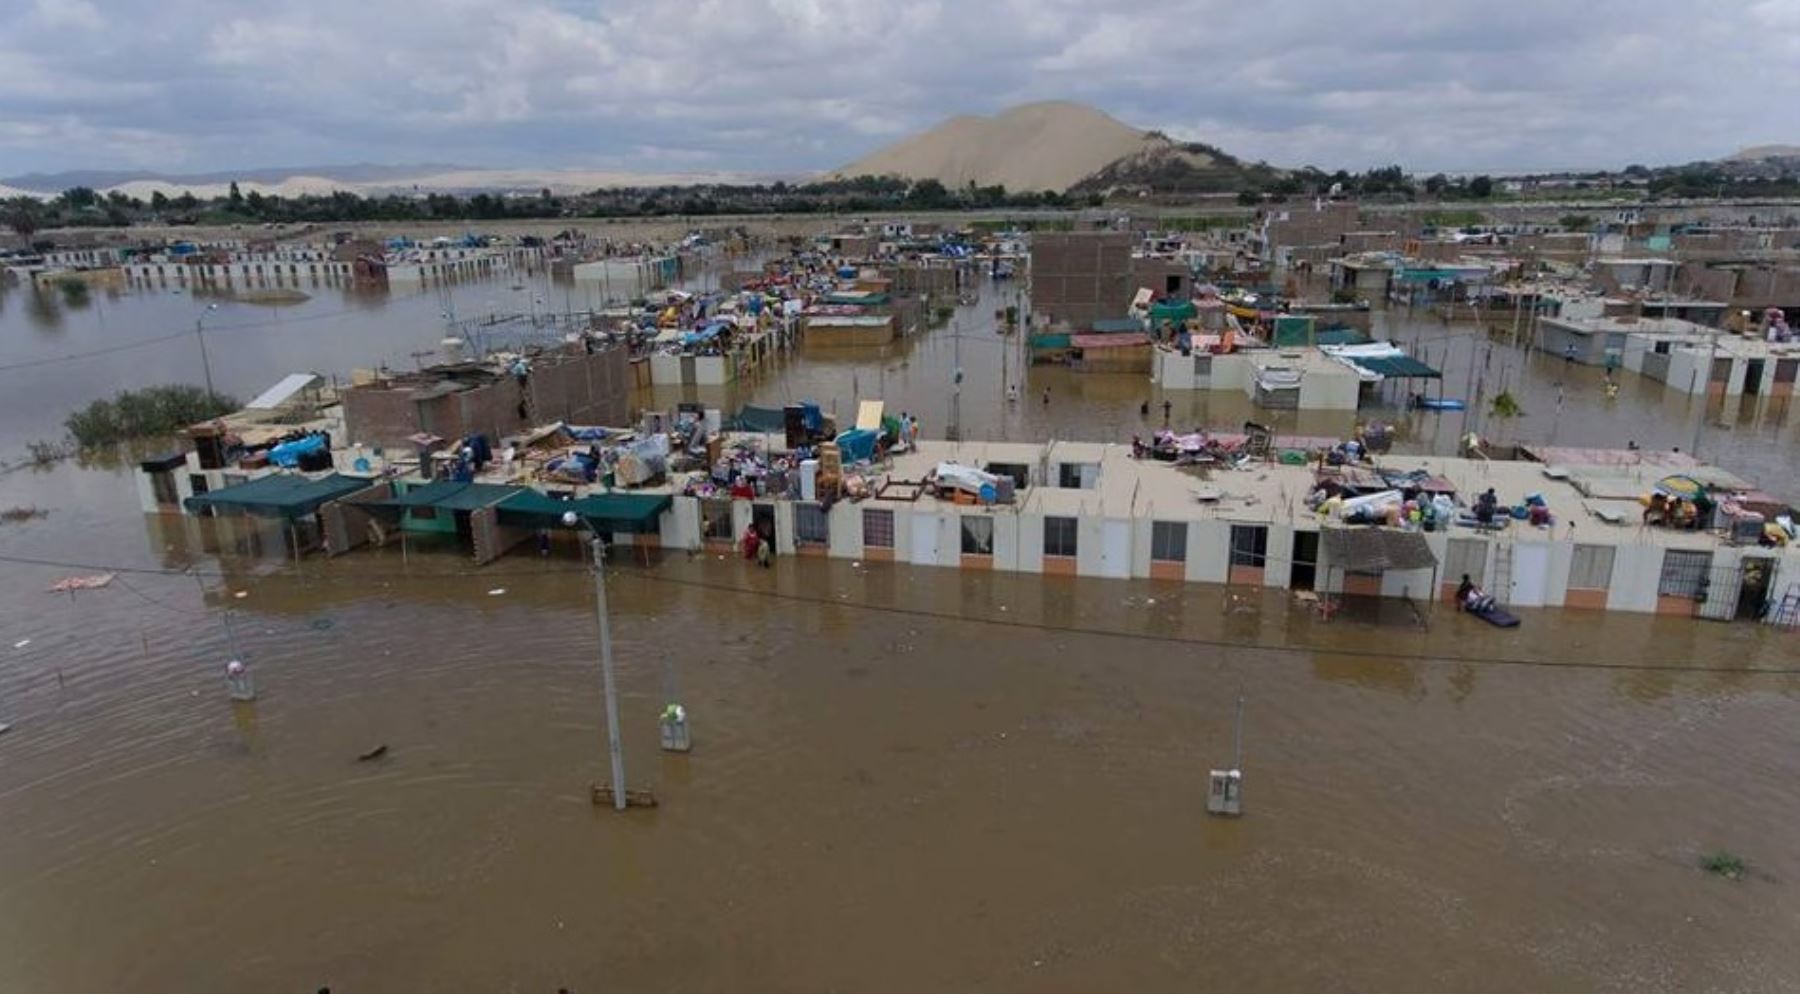 Inundación en distritos de la región dejó más de 5,000 familias damnificadas. Foto: Emerson Bautista Linares